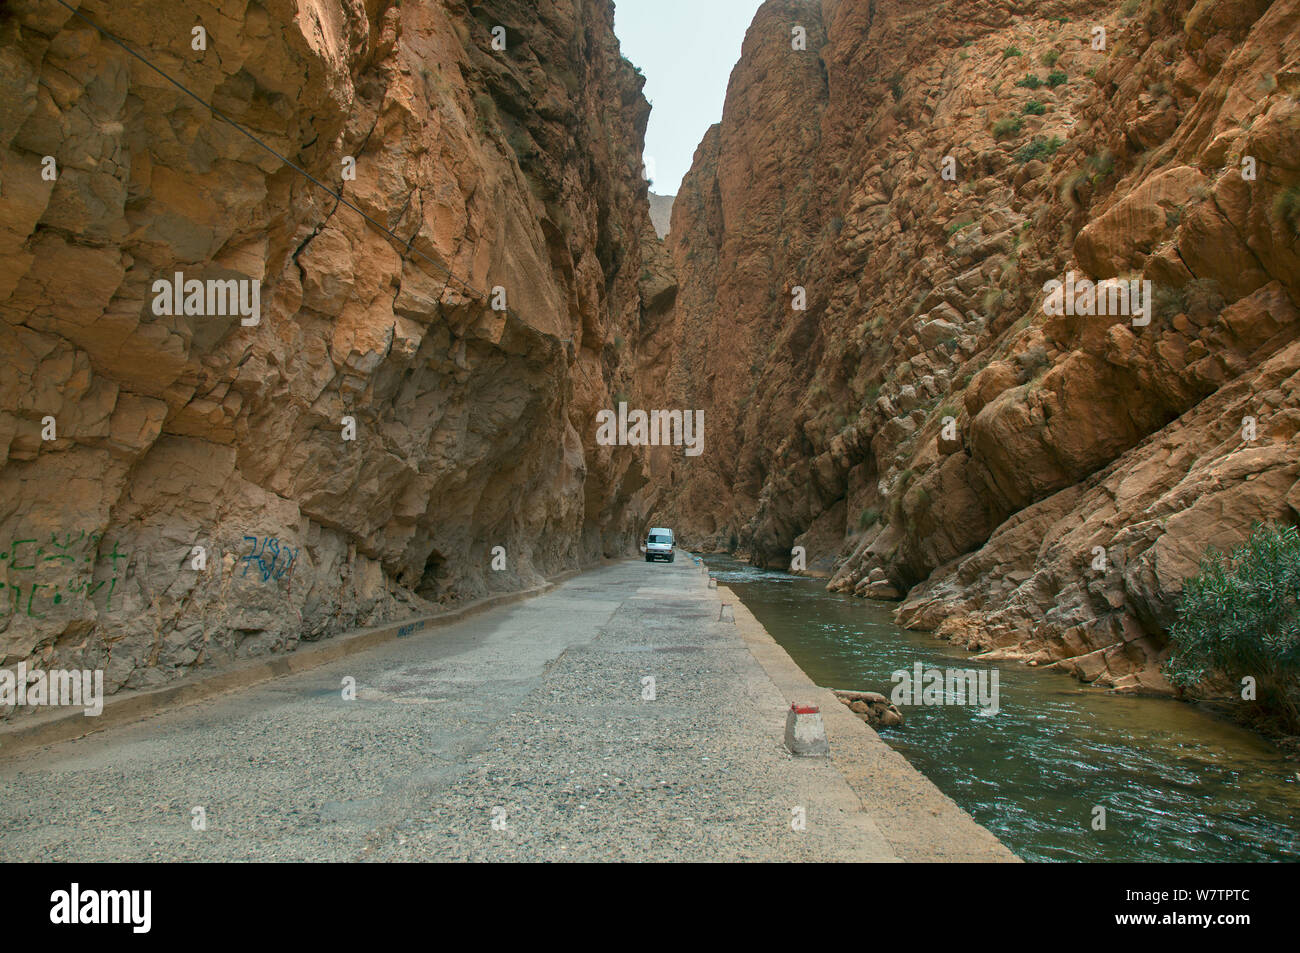 Die Dades-schlucht Straße zwischen steilen Felsen am Fluss, Marokko, März 2011. Stockfoto